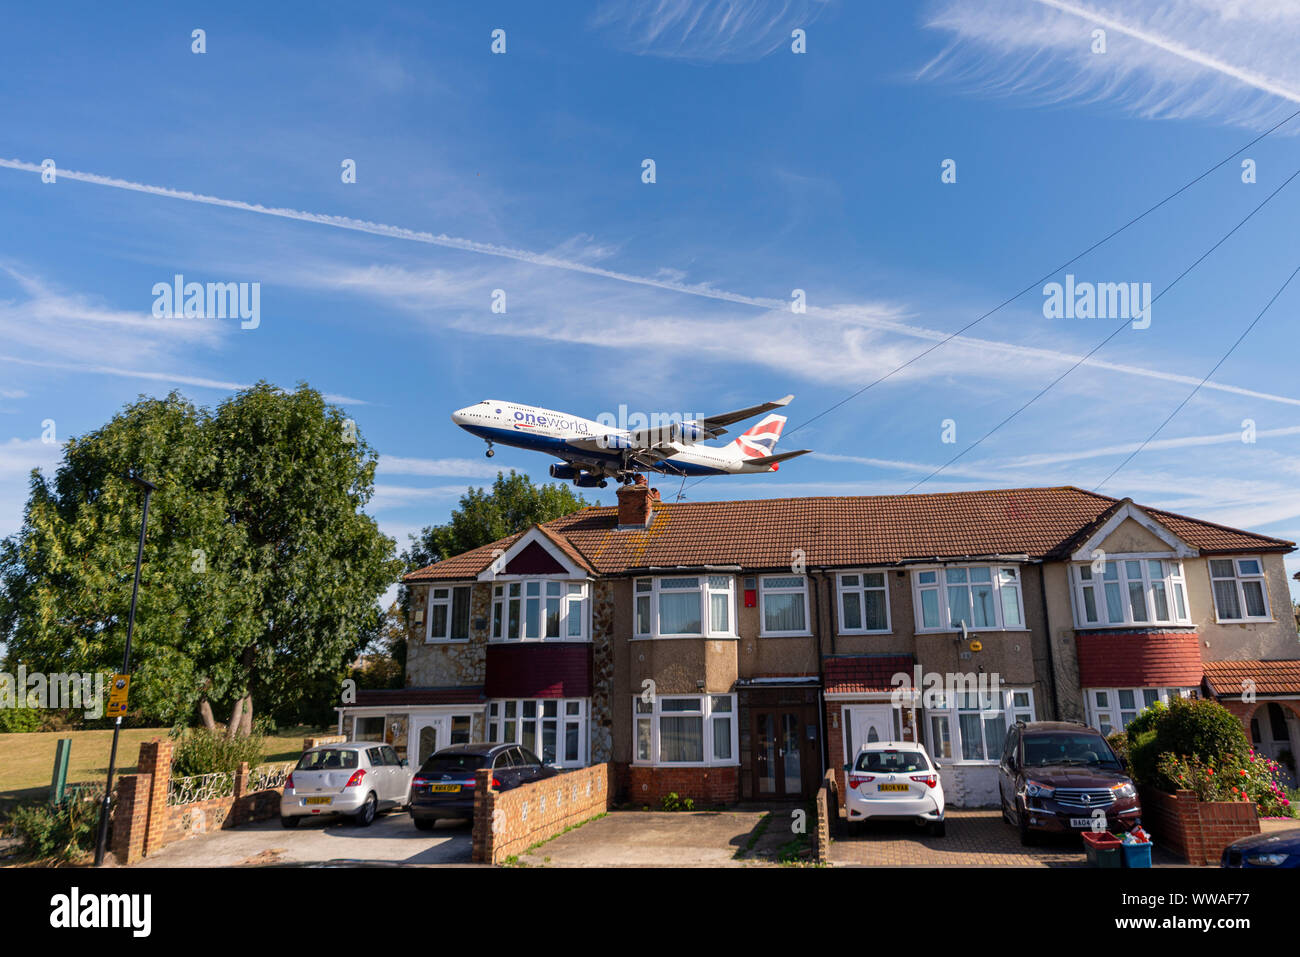 British Airways Boeing 747 Jumbo aereo di linea che atterra all'aeroporto Heathrow di Londra a Hounslow, Londra, Regno Unito, sopra le case. Case Foto Stock